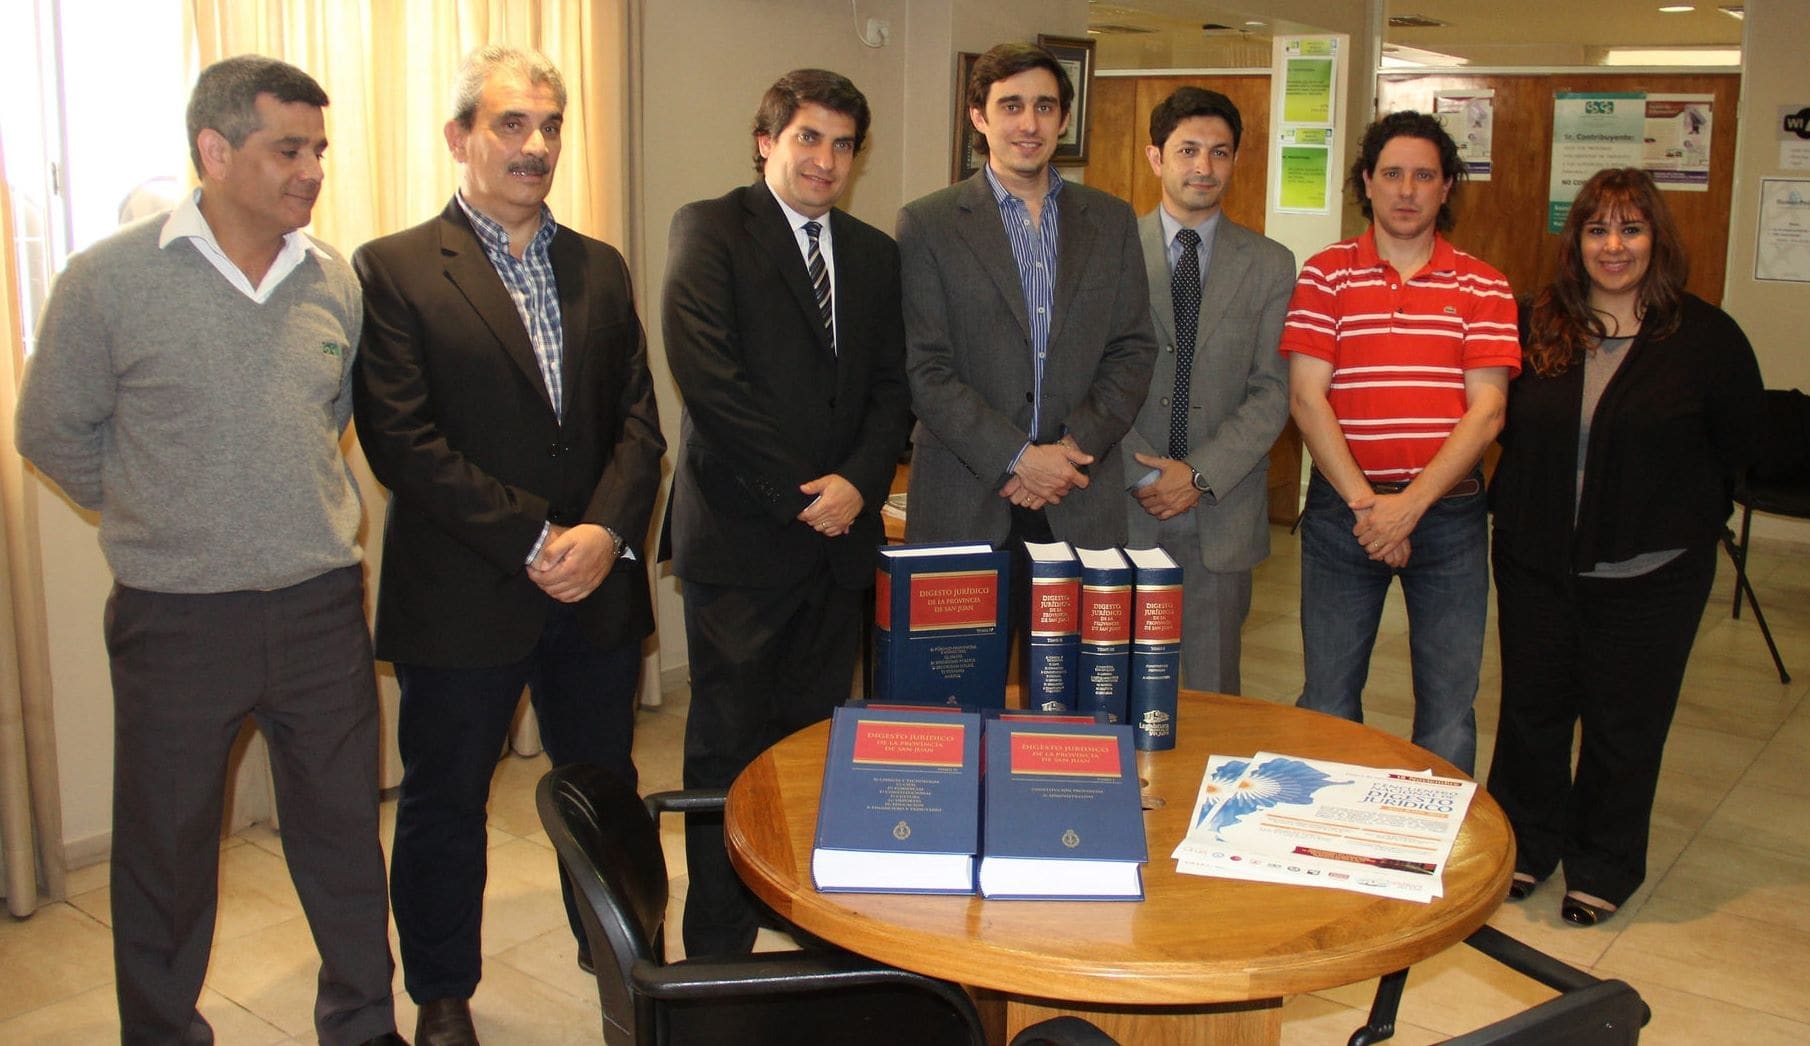 El Dr. Emilio Baistrocchi, junto al coordinador Gustavo Velert, entregaron ejemplares del Digesto Jurídico a autoridades del C.P.C.E.S.J.